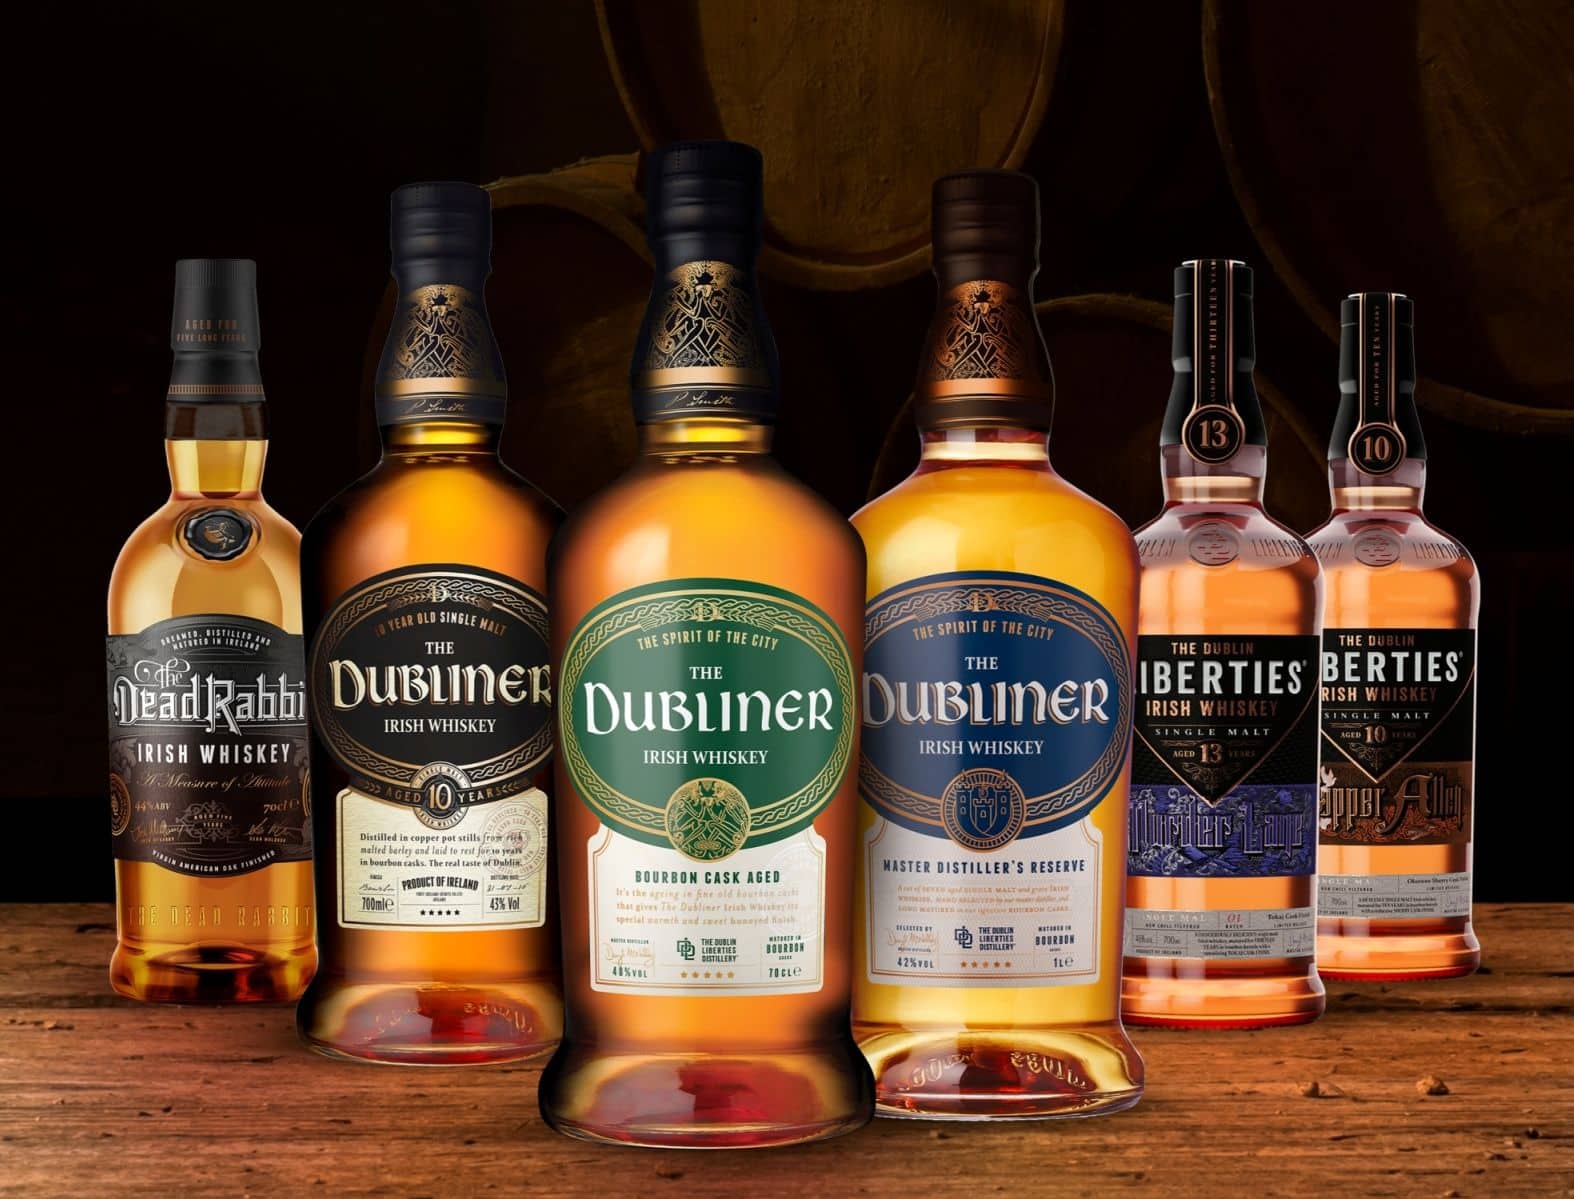 הוויסקי האירי The Dubliner שמיוצר במזקקת דאבלין ליברטי מגיע לישראל באמצעות חברת יורוסטנדרט - מיבואניות האלכוהול הגדולות